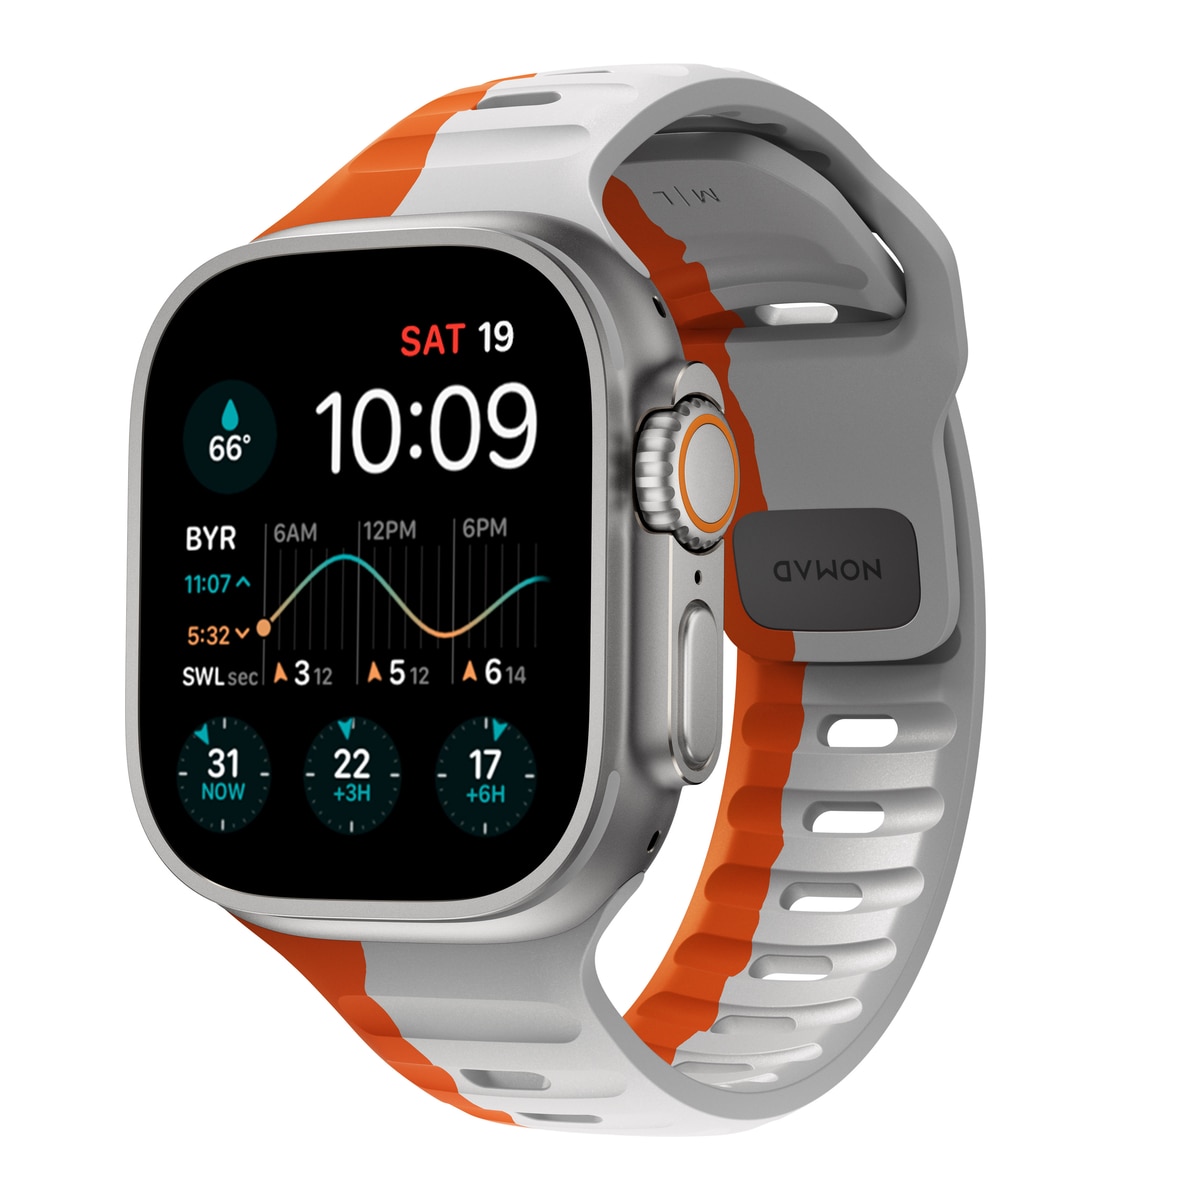 Apple Watch 44mm Armbänder & Schutzzubehör PhoneLife - kaufen